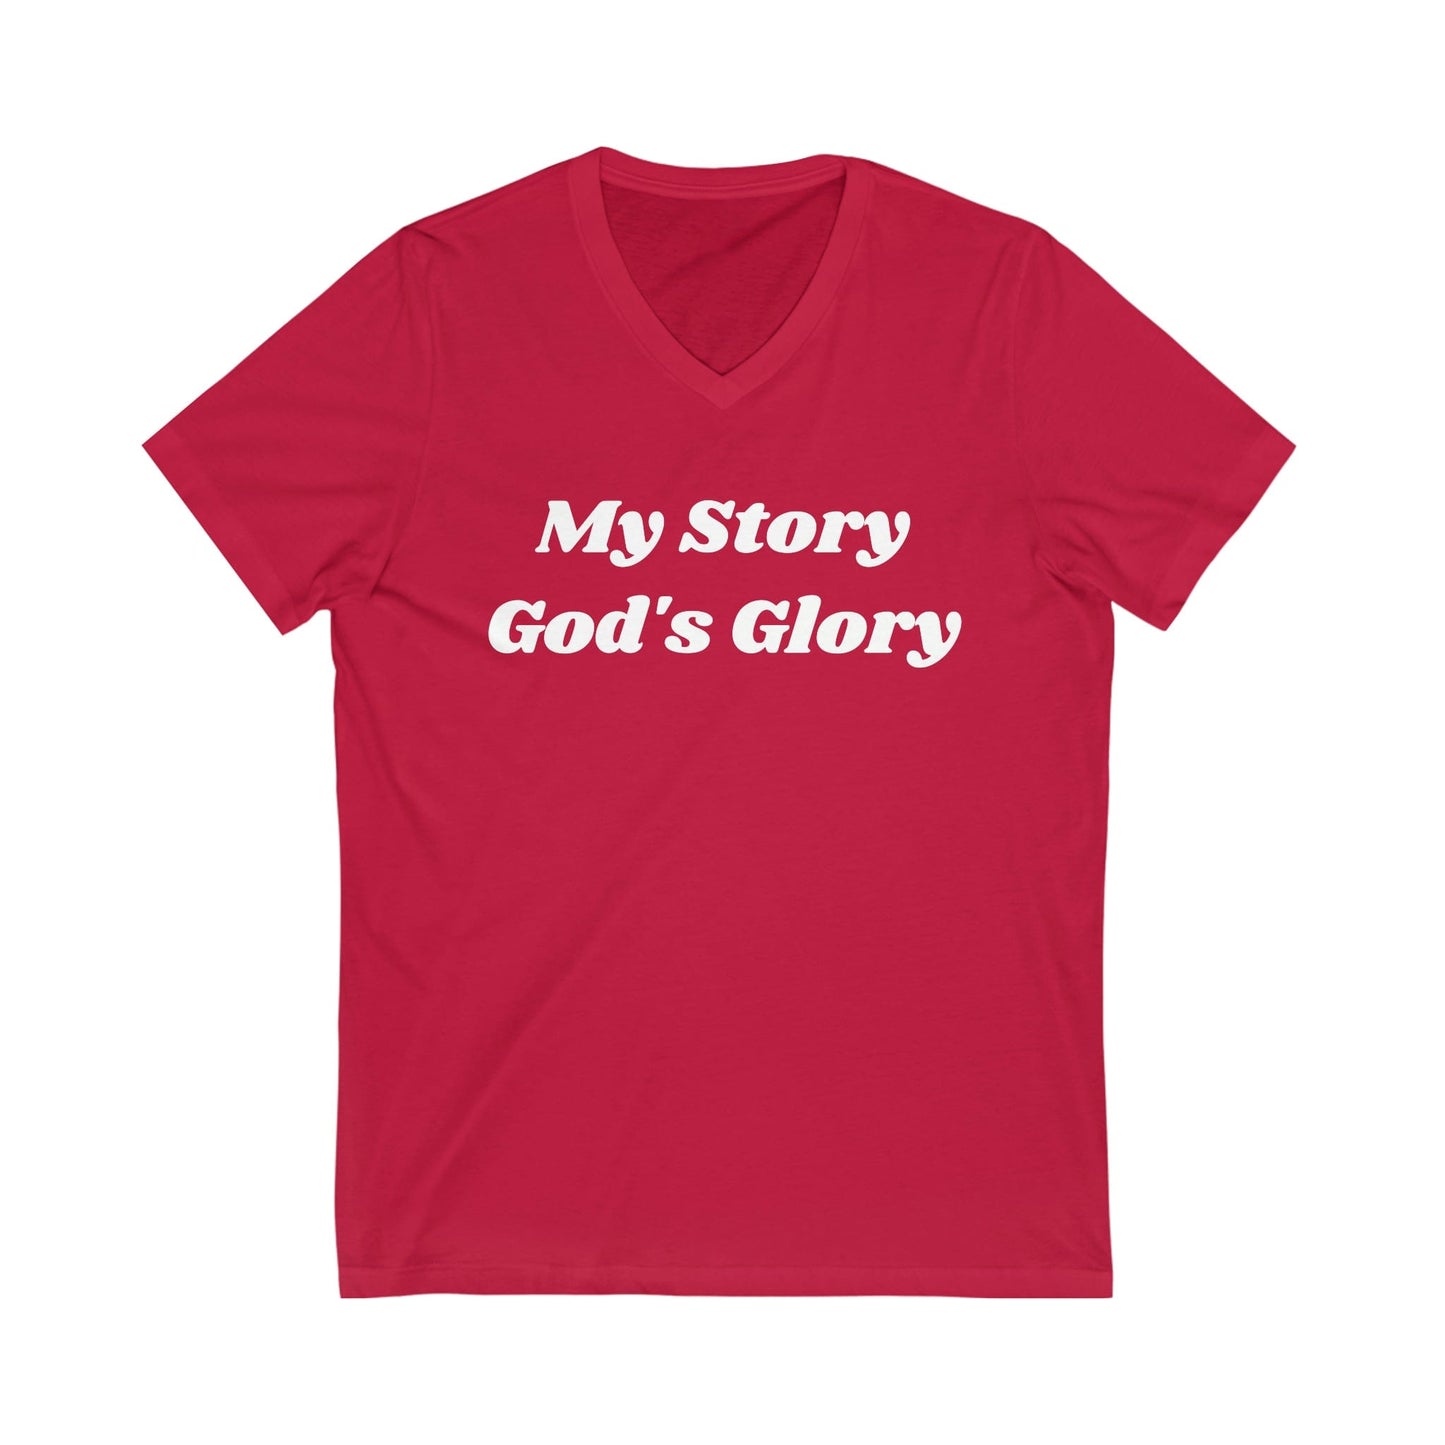 God's Glory Tee, Glorying God T-Shirt, Christian Apparel, Faith Apparel